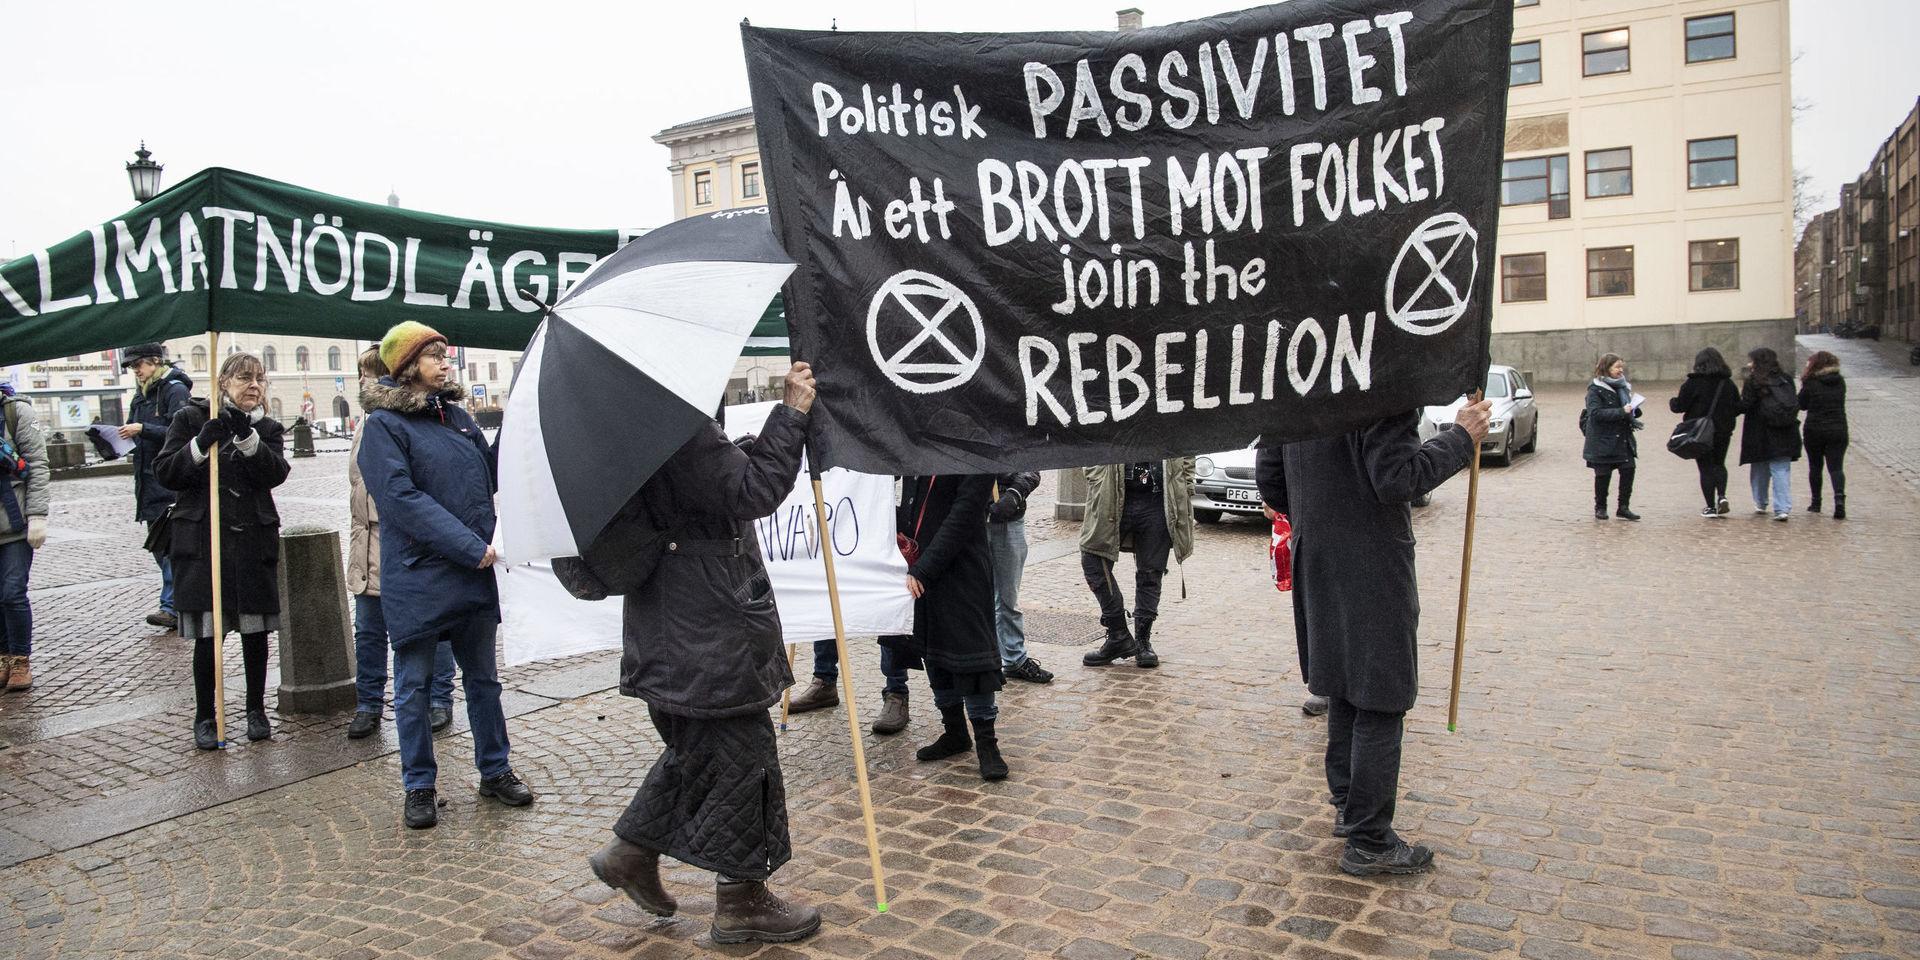 En grupp aktivister demonstrerade för klimatnödläge på Gustaf Adolfs torg inför kommunfullmäktiges möte.